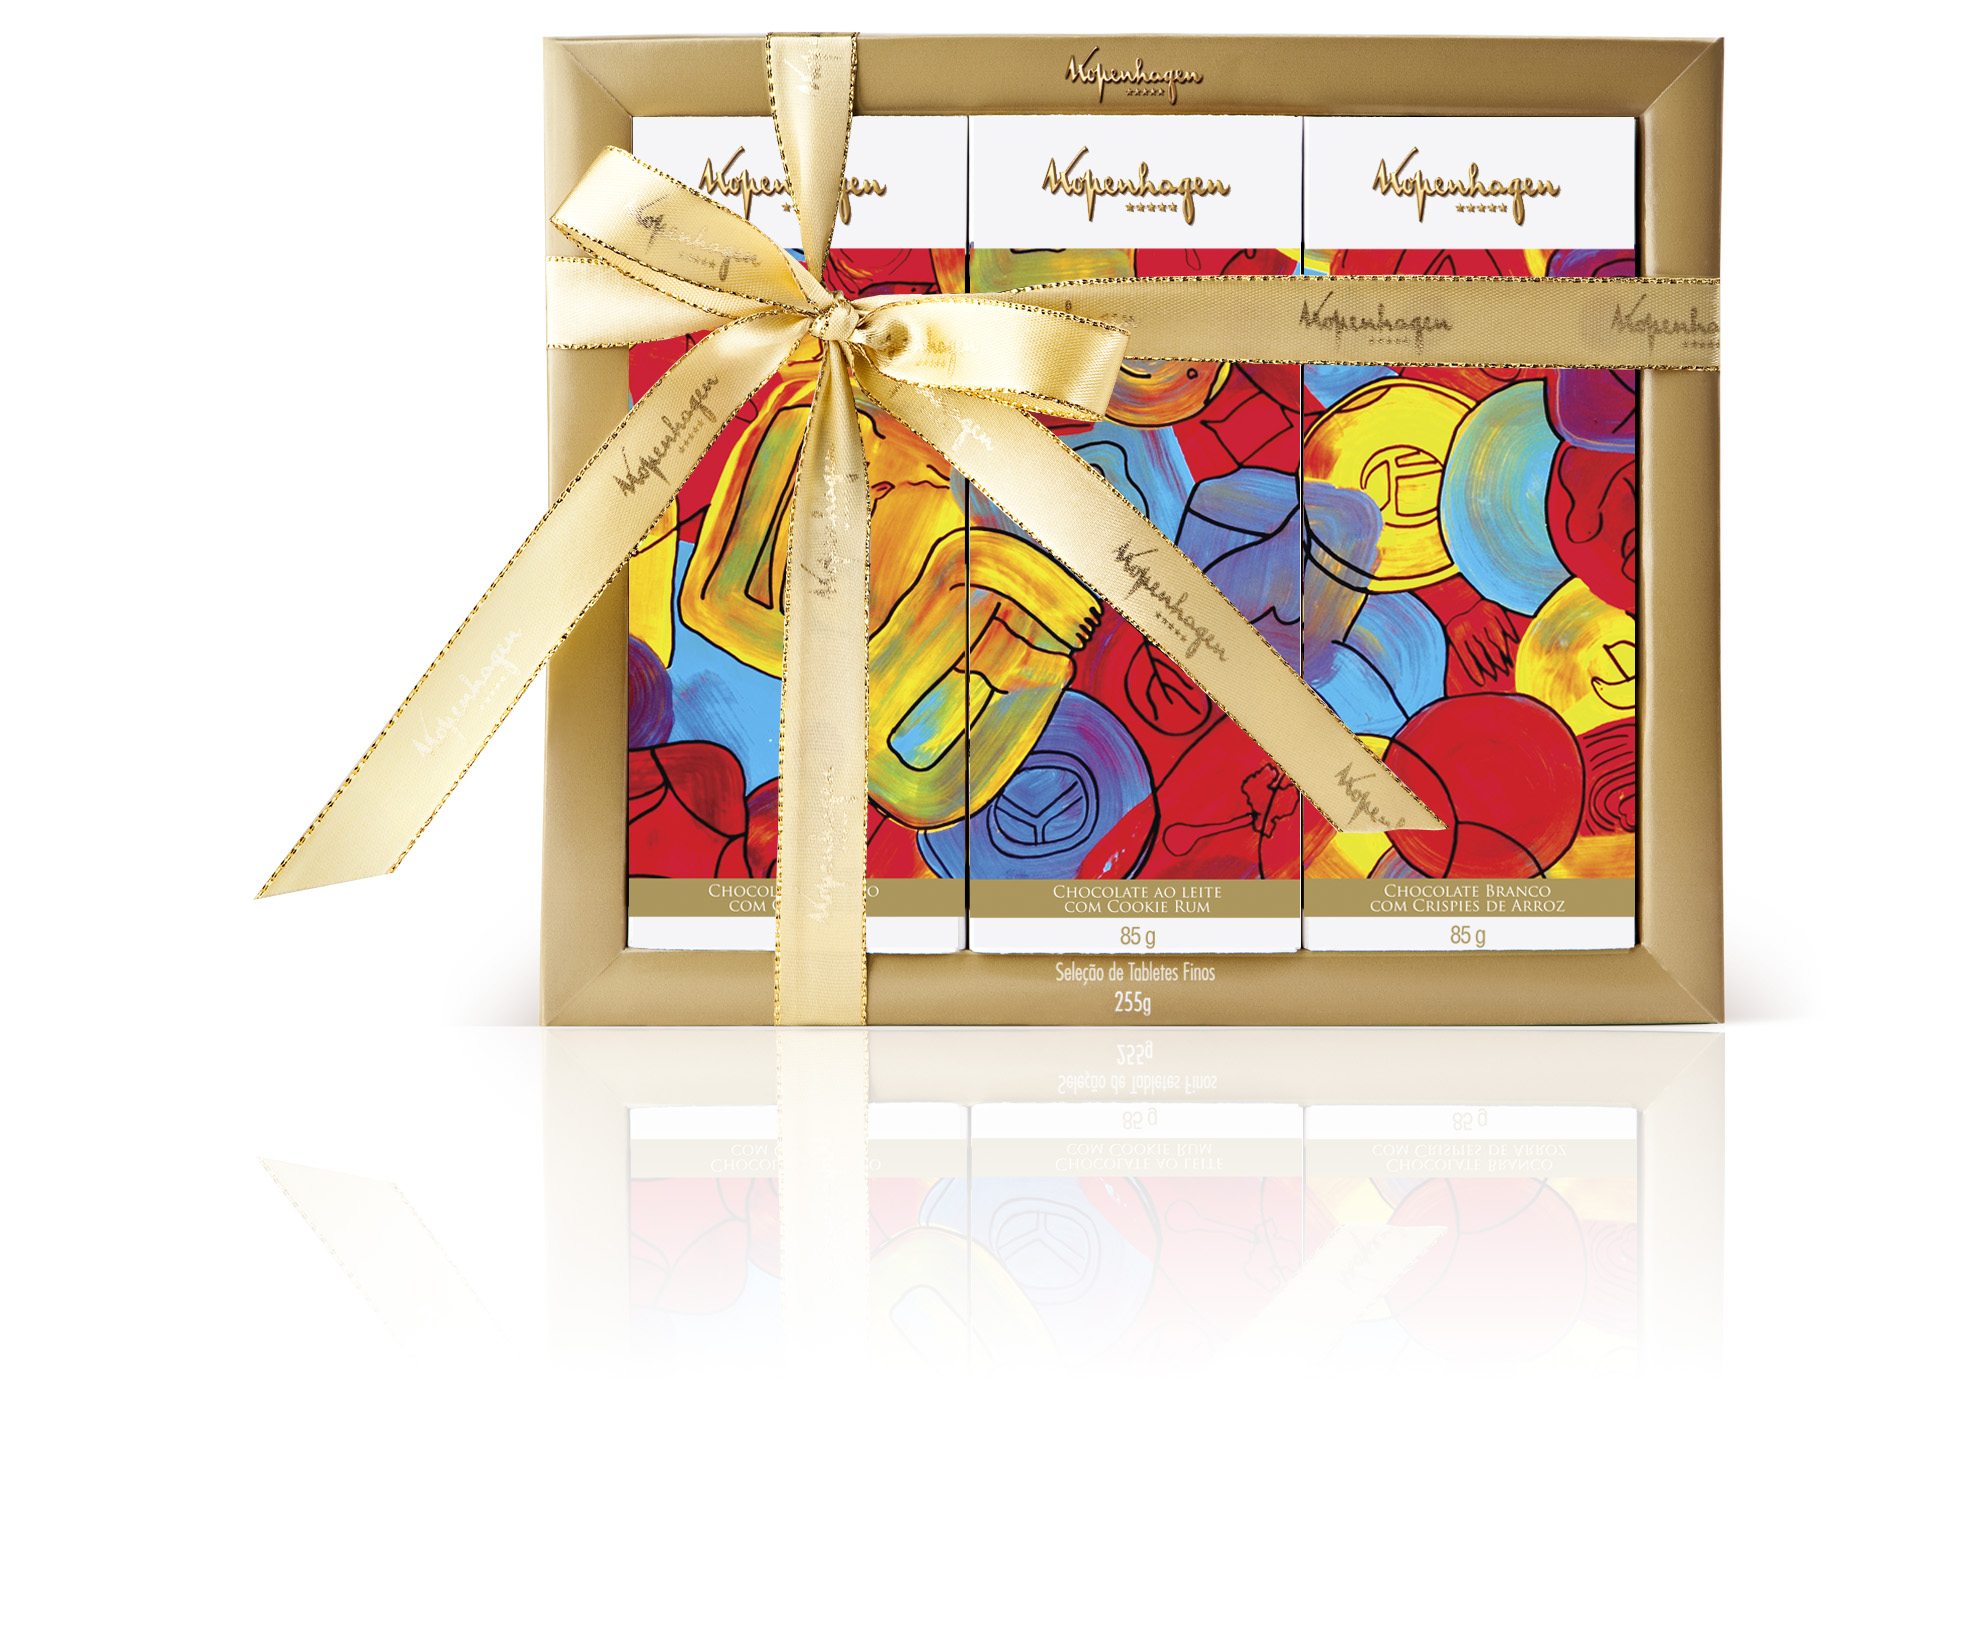 Caixa de embalagem quadrada com borda dourada e a inscrição “Kopenhagen” contendo três tabletes de chocolate em embalagens estampadas com obra de arte abstrata e colorida. A caixa está envolta por fita dourada e um grande laço.